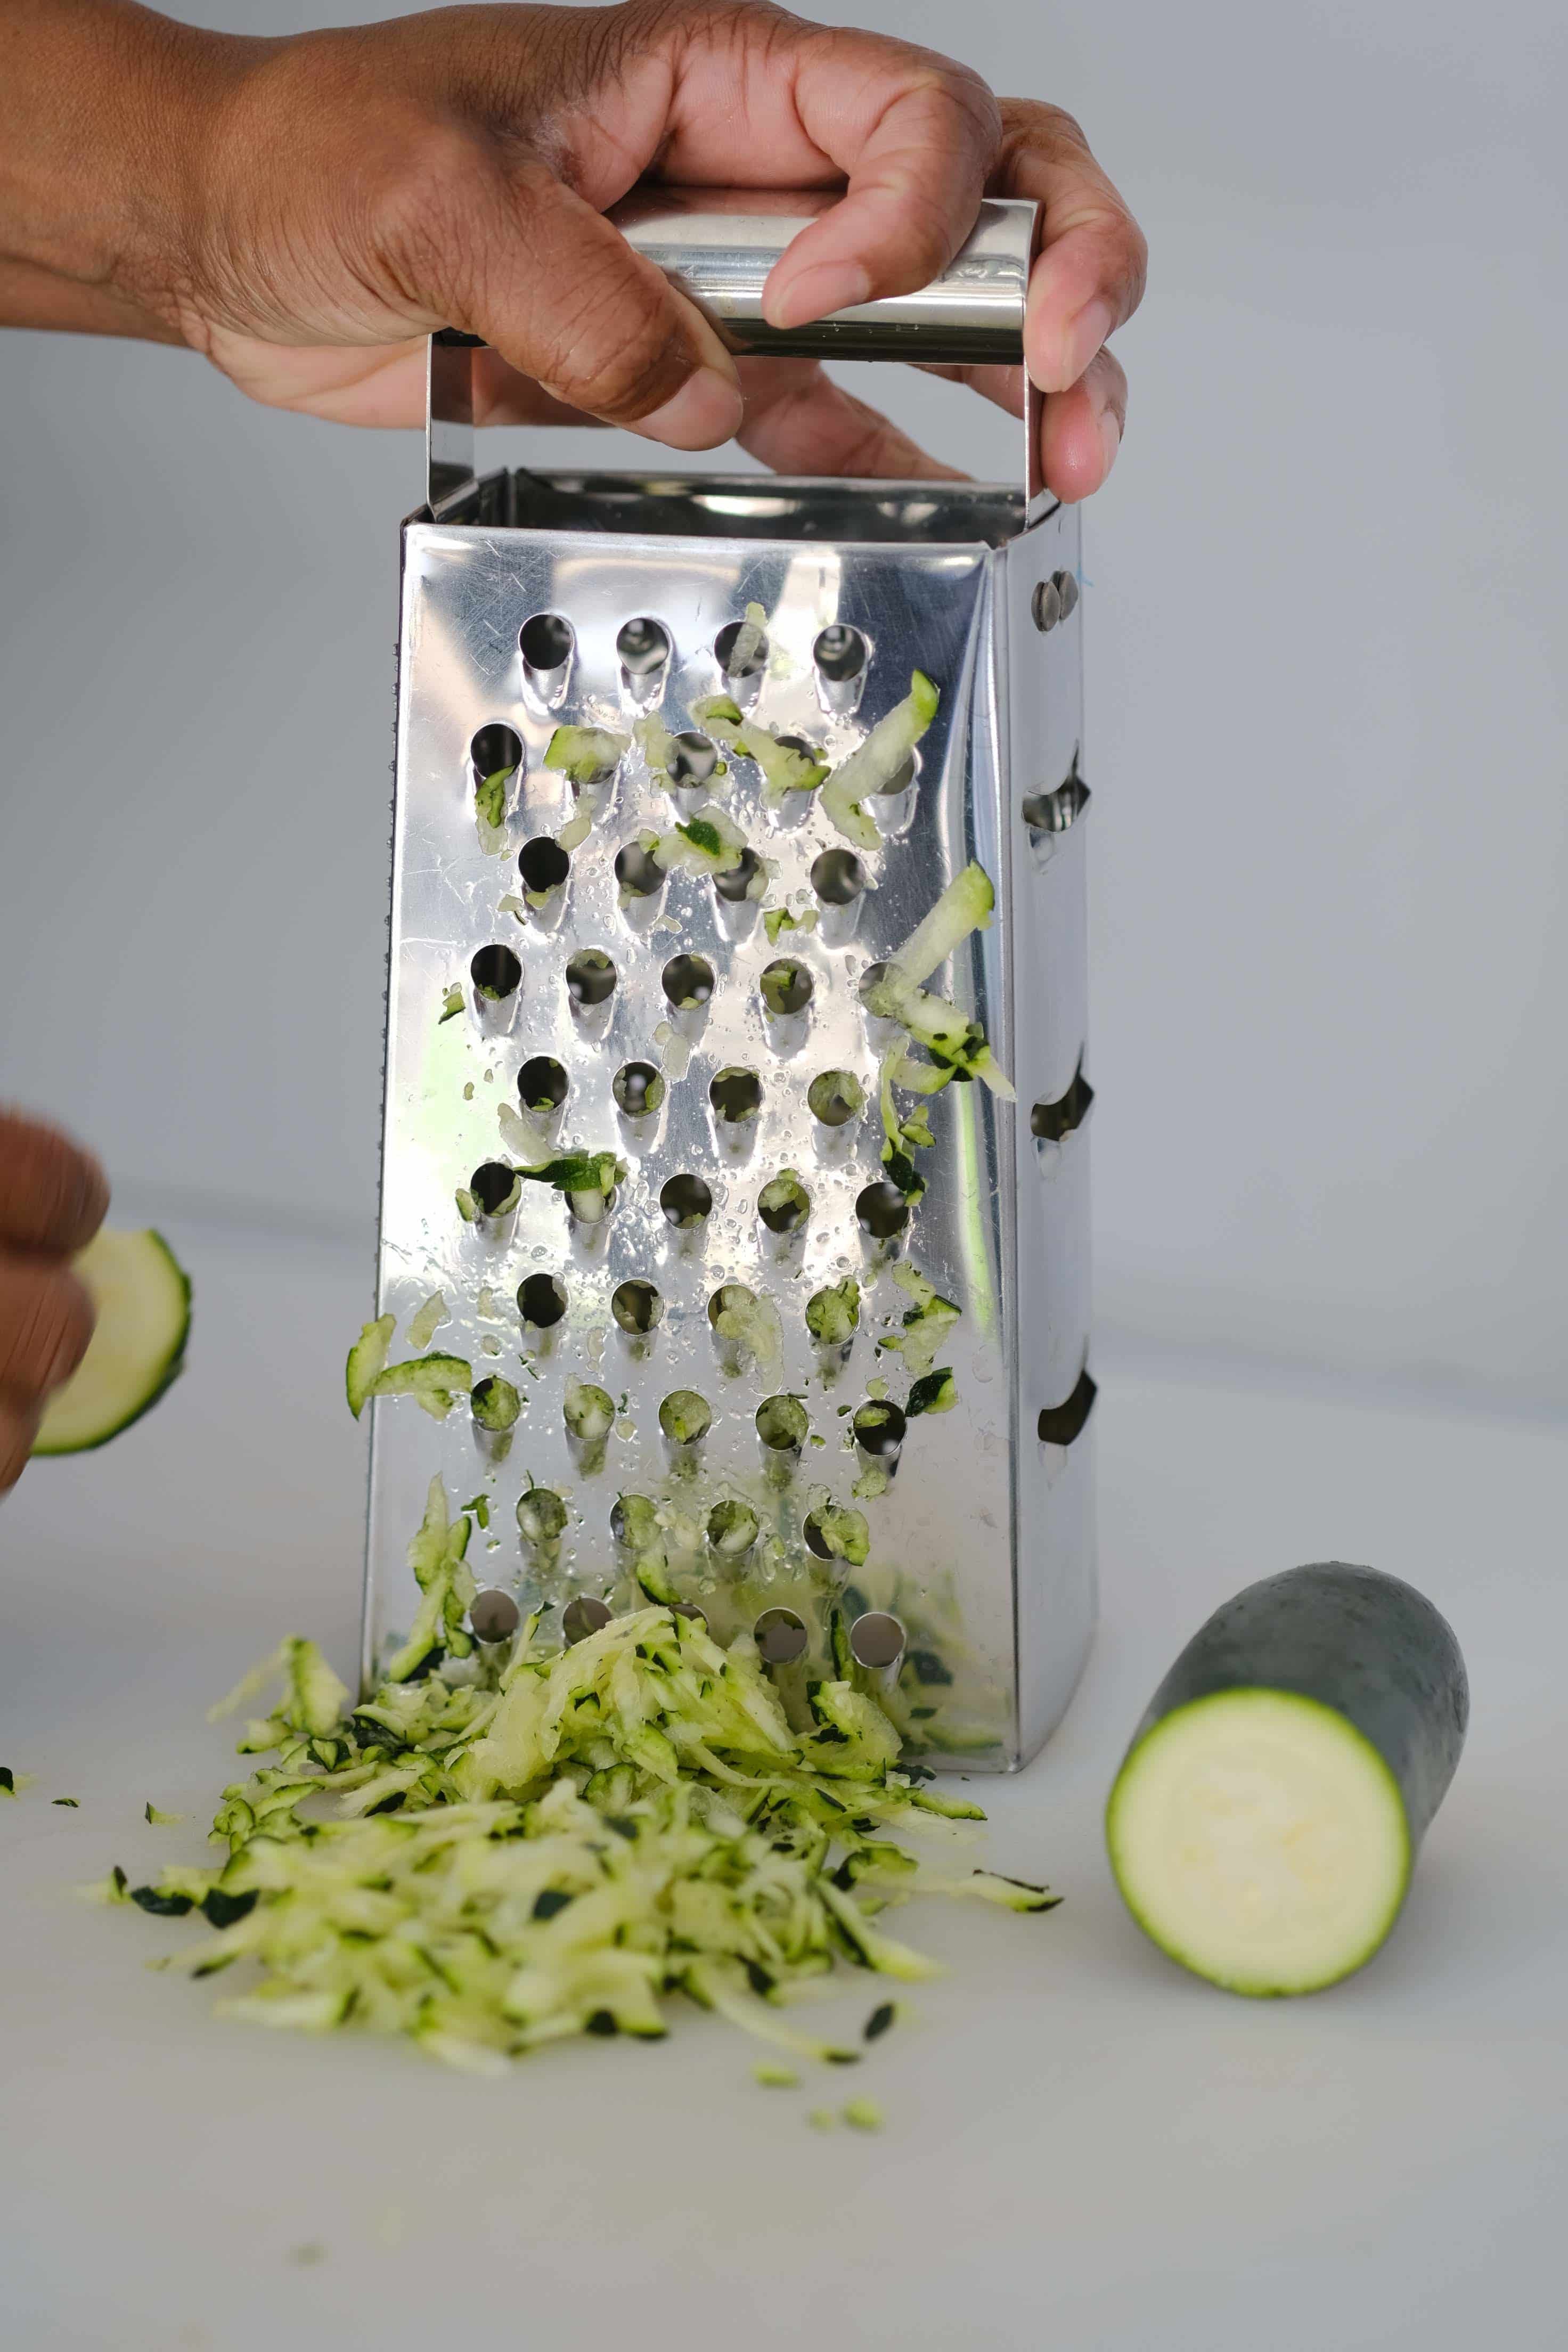 Zucchini being shredded with a food shredder